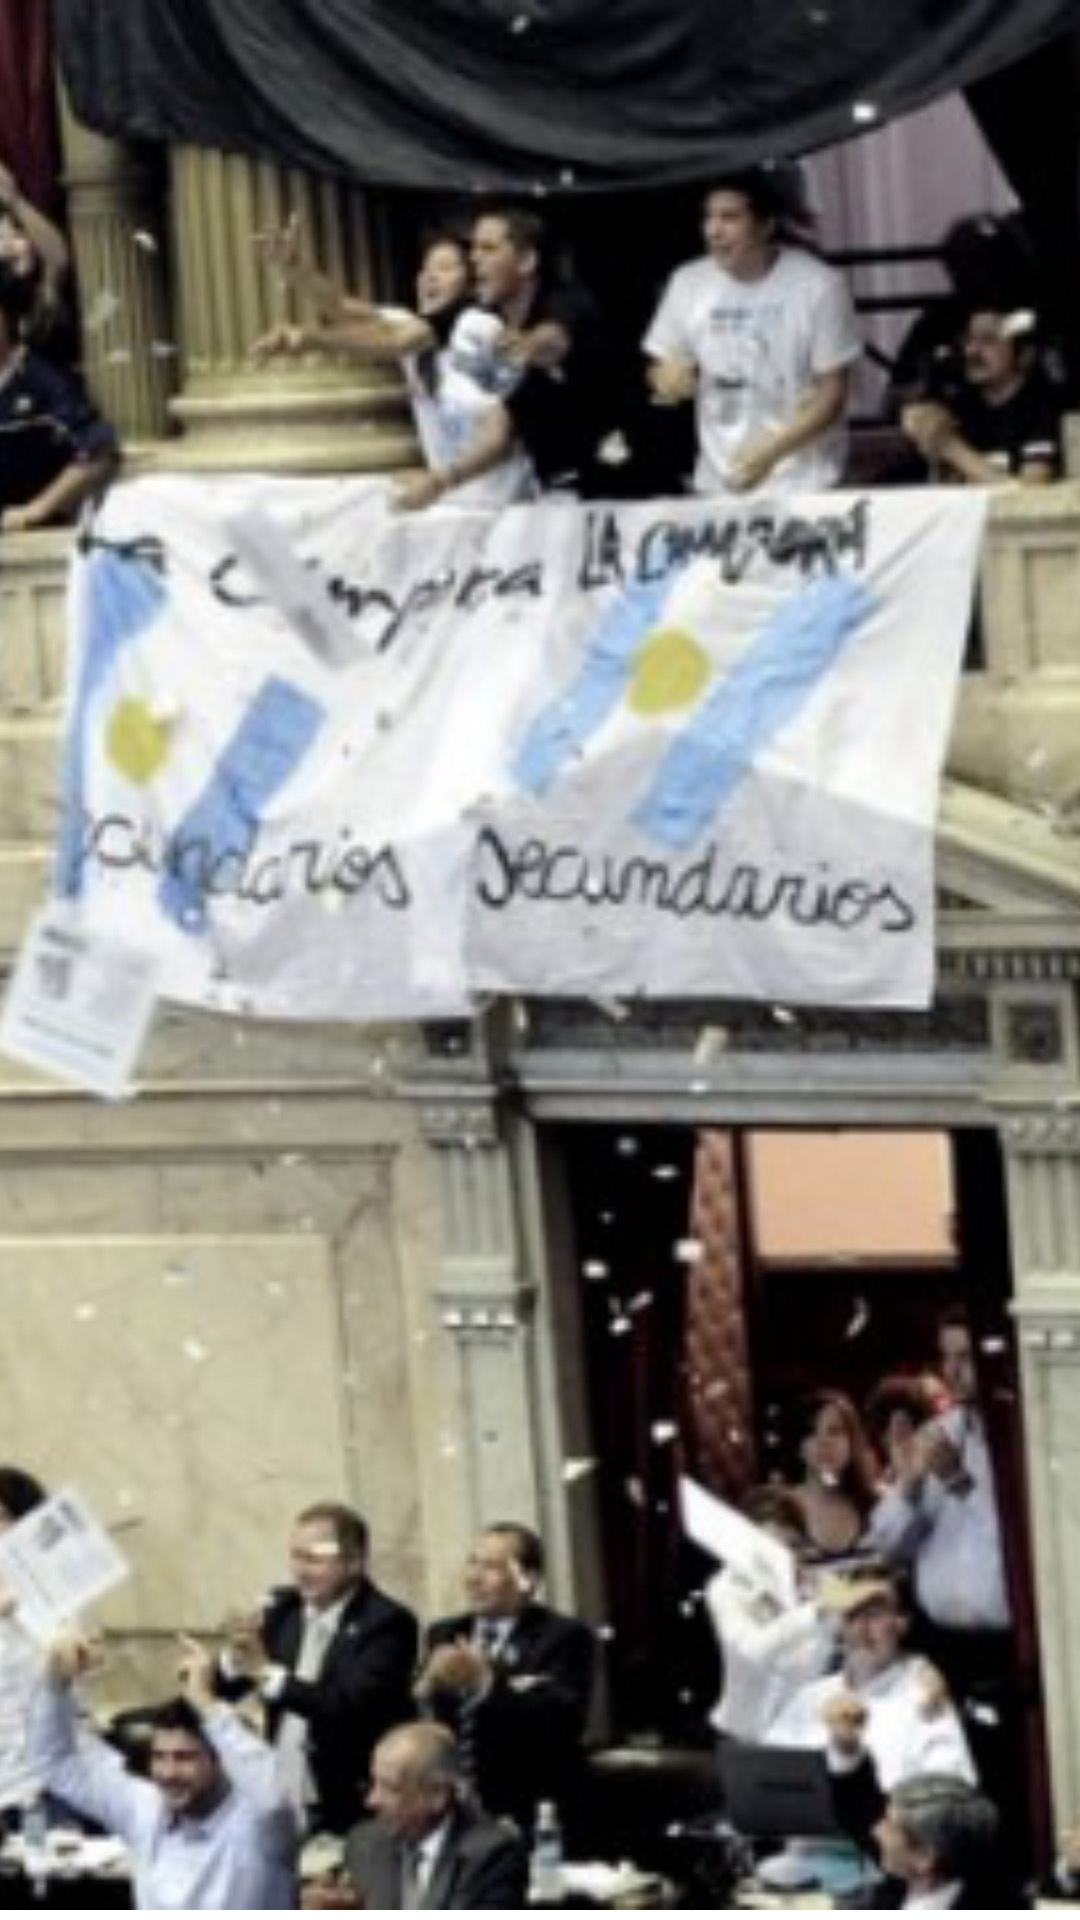 Aprobación de la Ley Voto Jóven en Diputados. Se puede ver la pantalla con los votos afirmativos, en los balcones el festejo de los militantes de “la cámpora” con sus banderas.